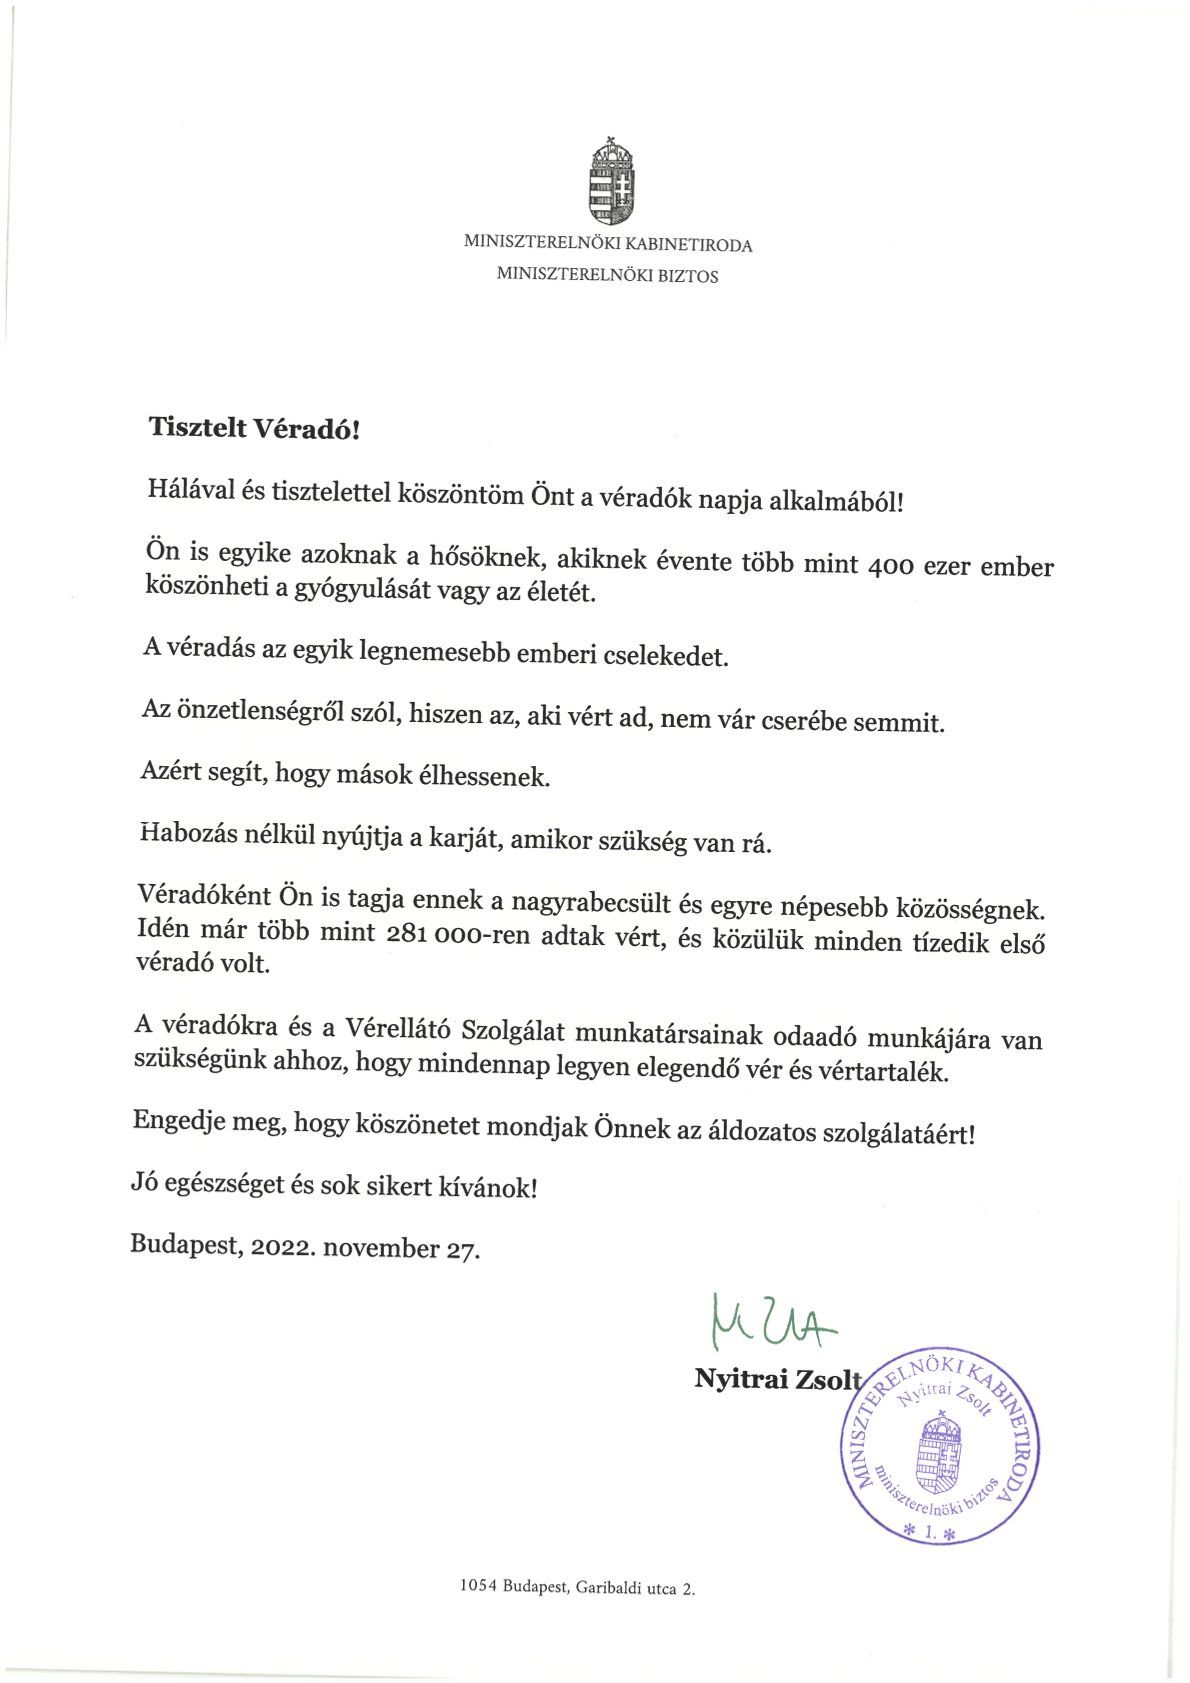 Nyitrai Zsolt, a miniszterelnök főtanácsadója levélben köszönte meg a véradók áldozatkészségét